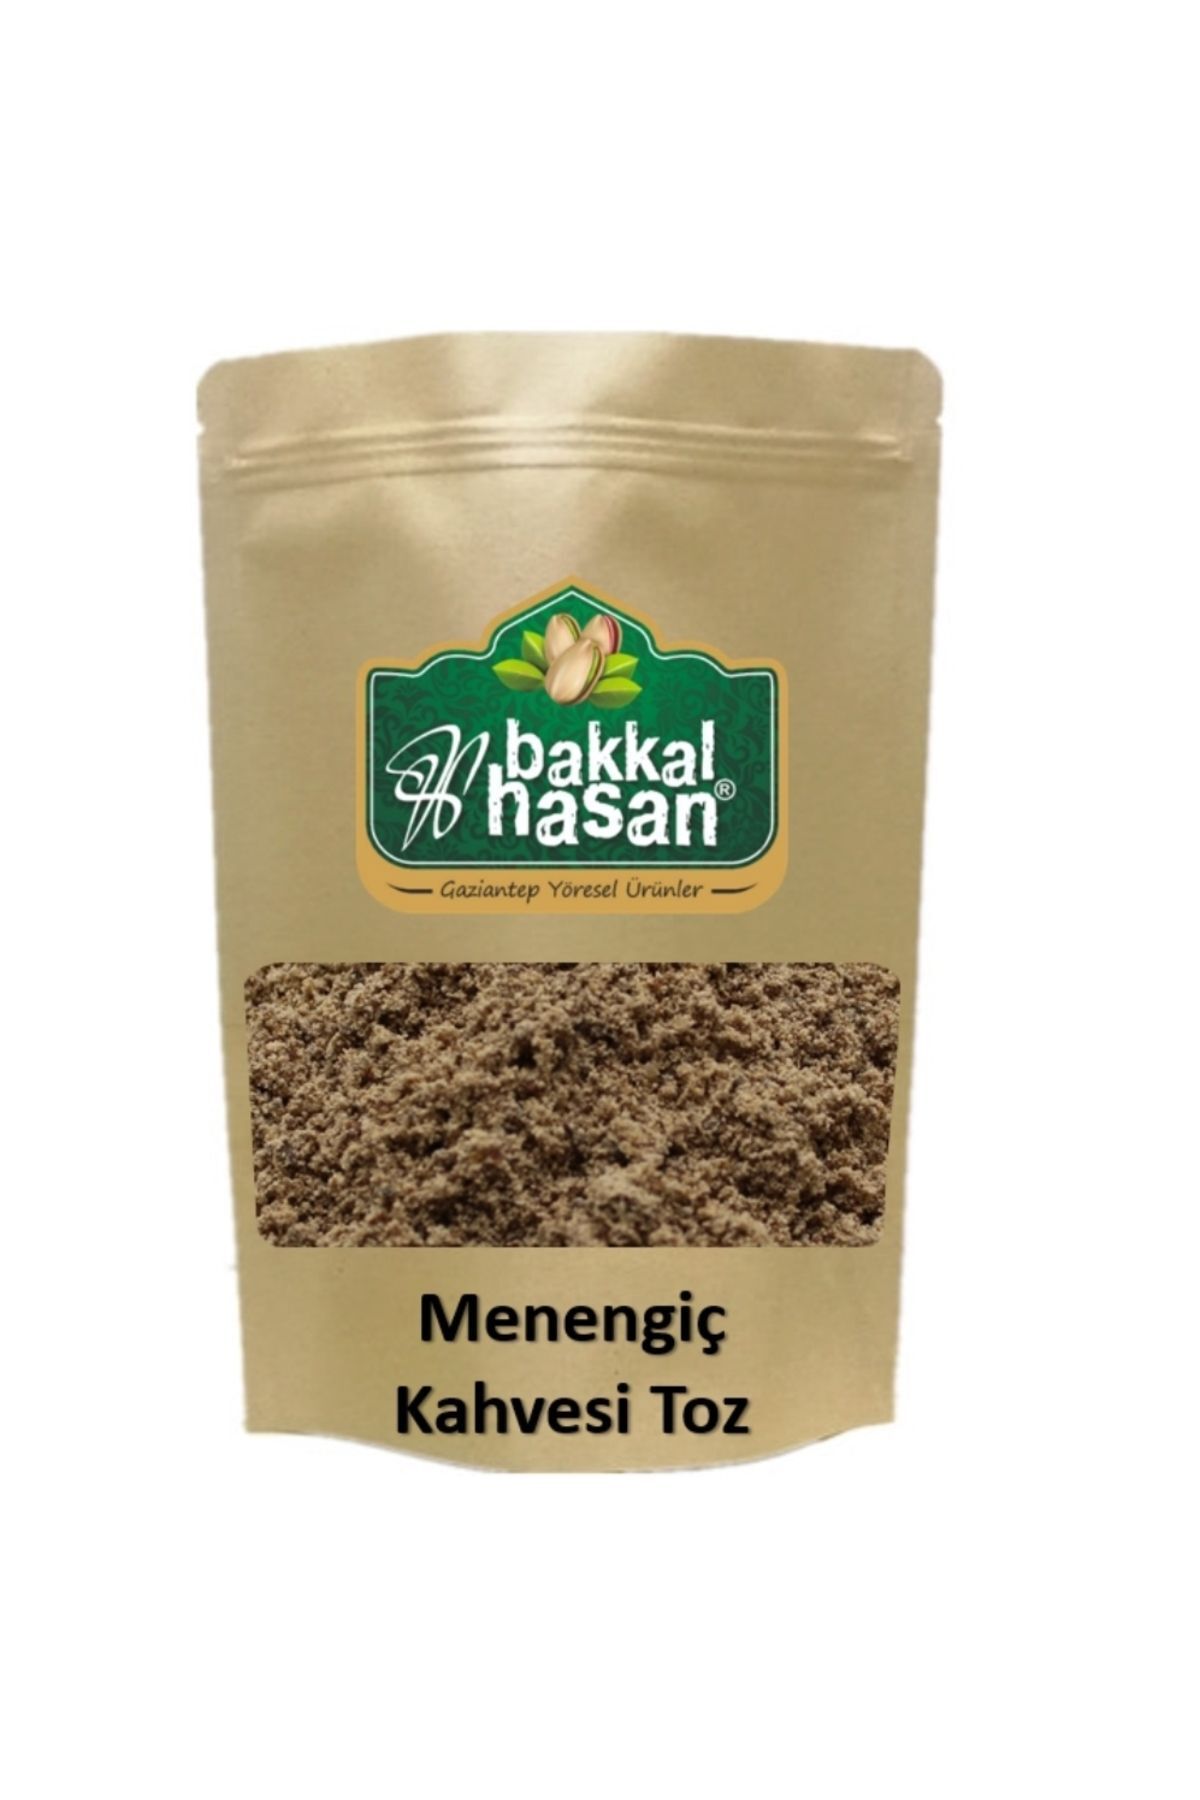 bakkal hasan Menengiç Kahvesi Toz 250 gr - Bakkal Hasan